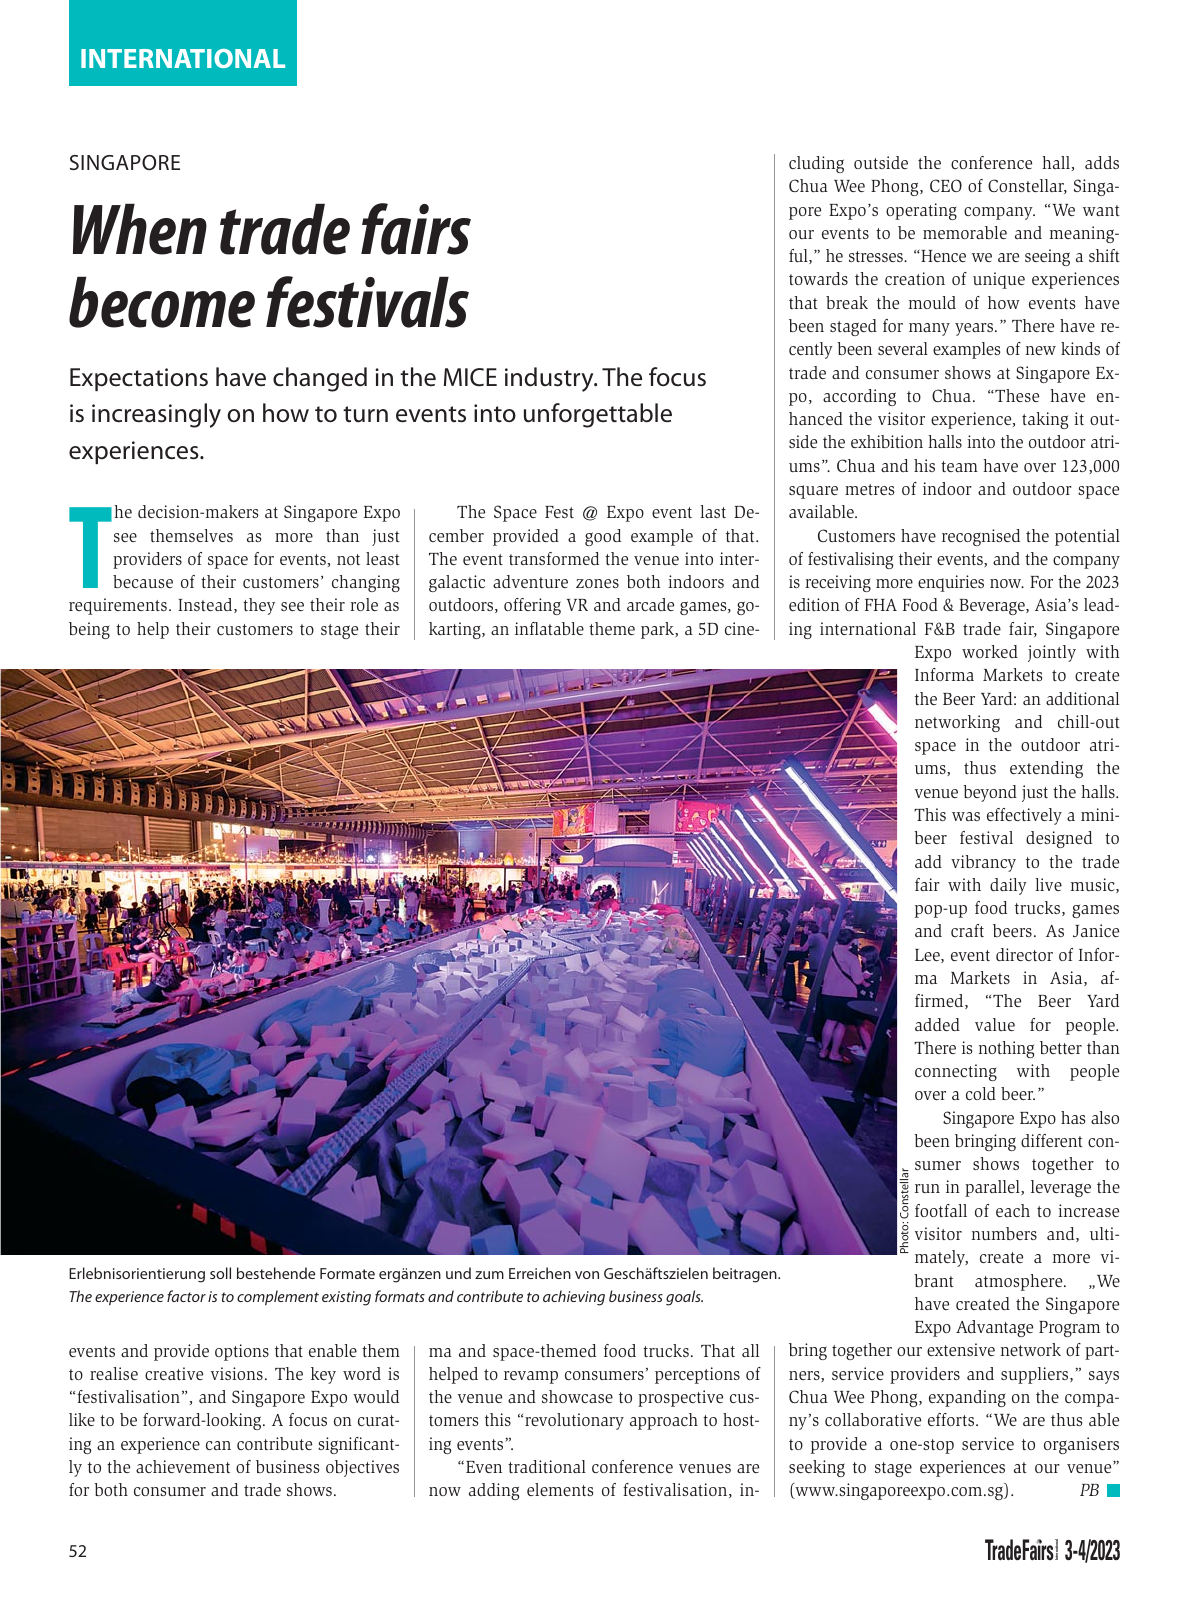 Vorschau TFI Trade-Fairs-International 03/2023 Seite 52